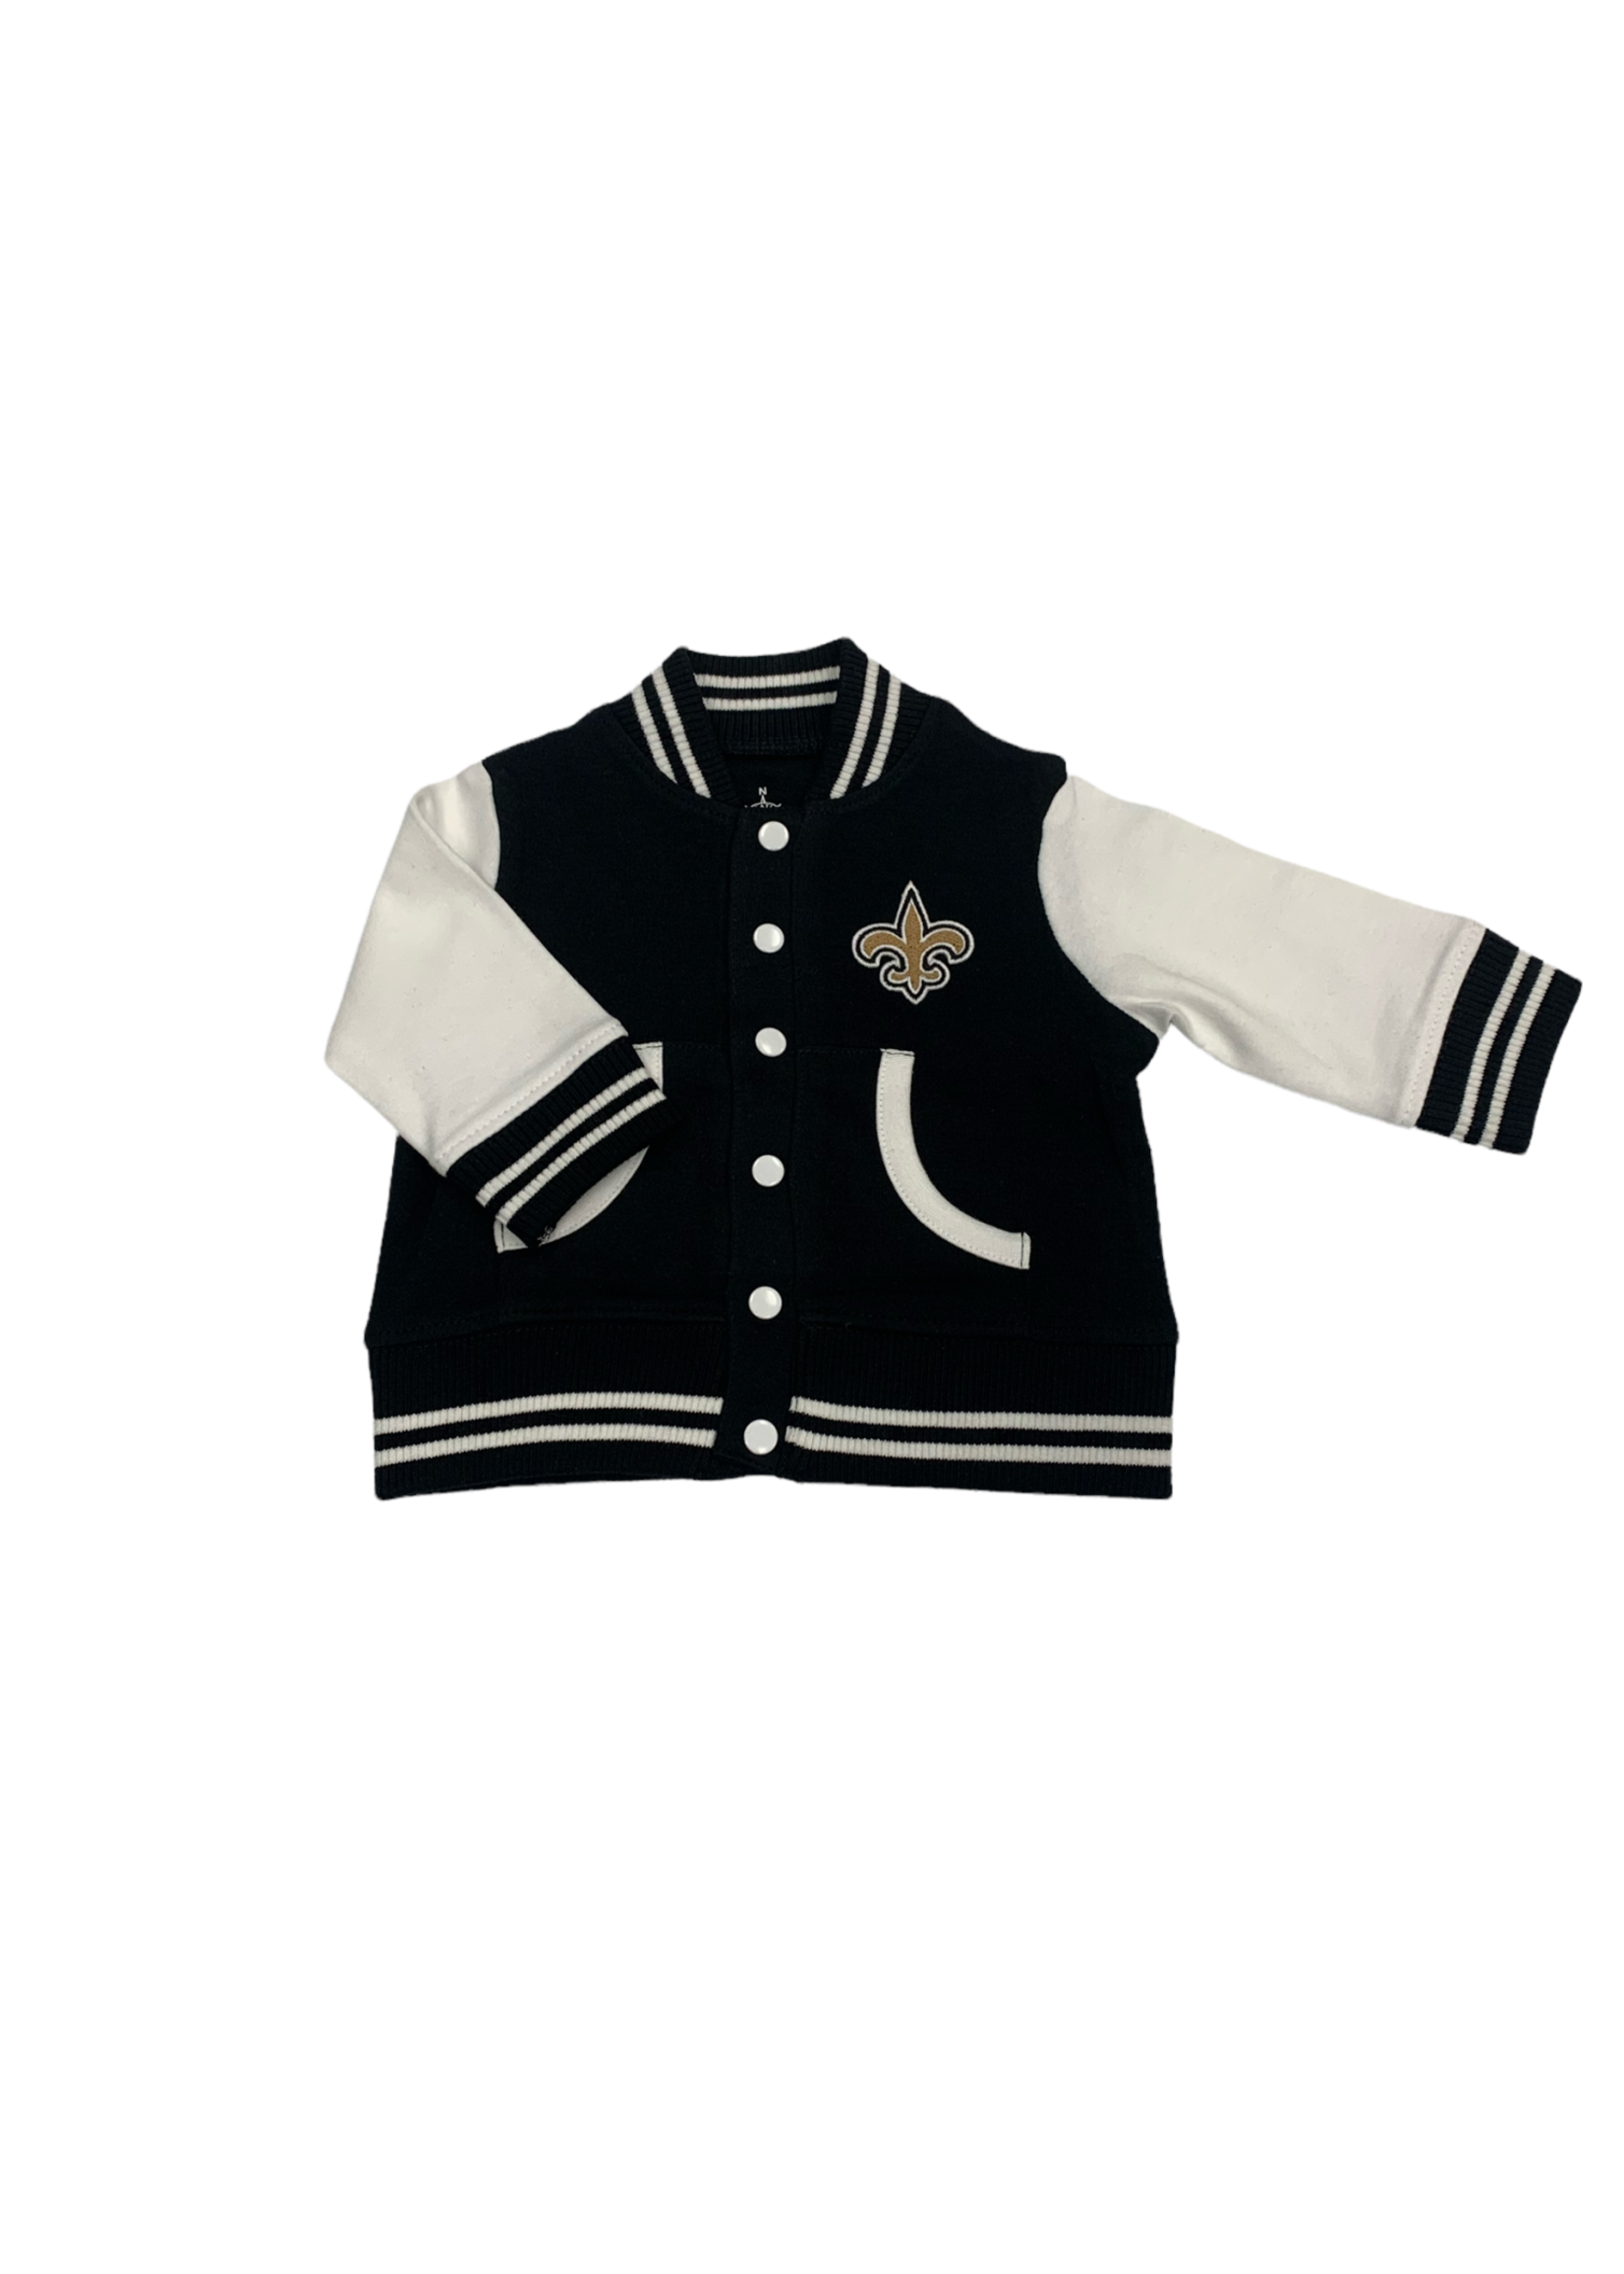 Creative Knitwear Saints - Black Varsity Jacket - 438